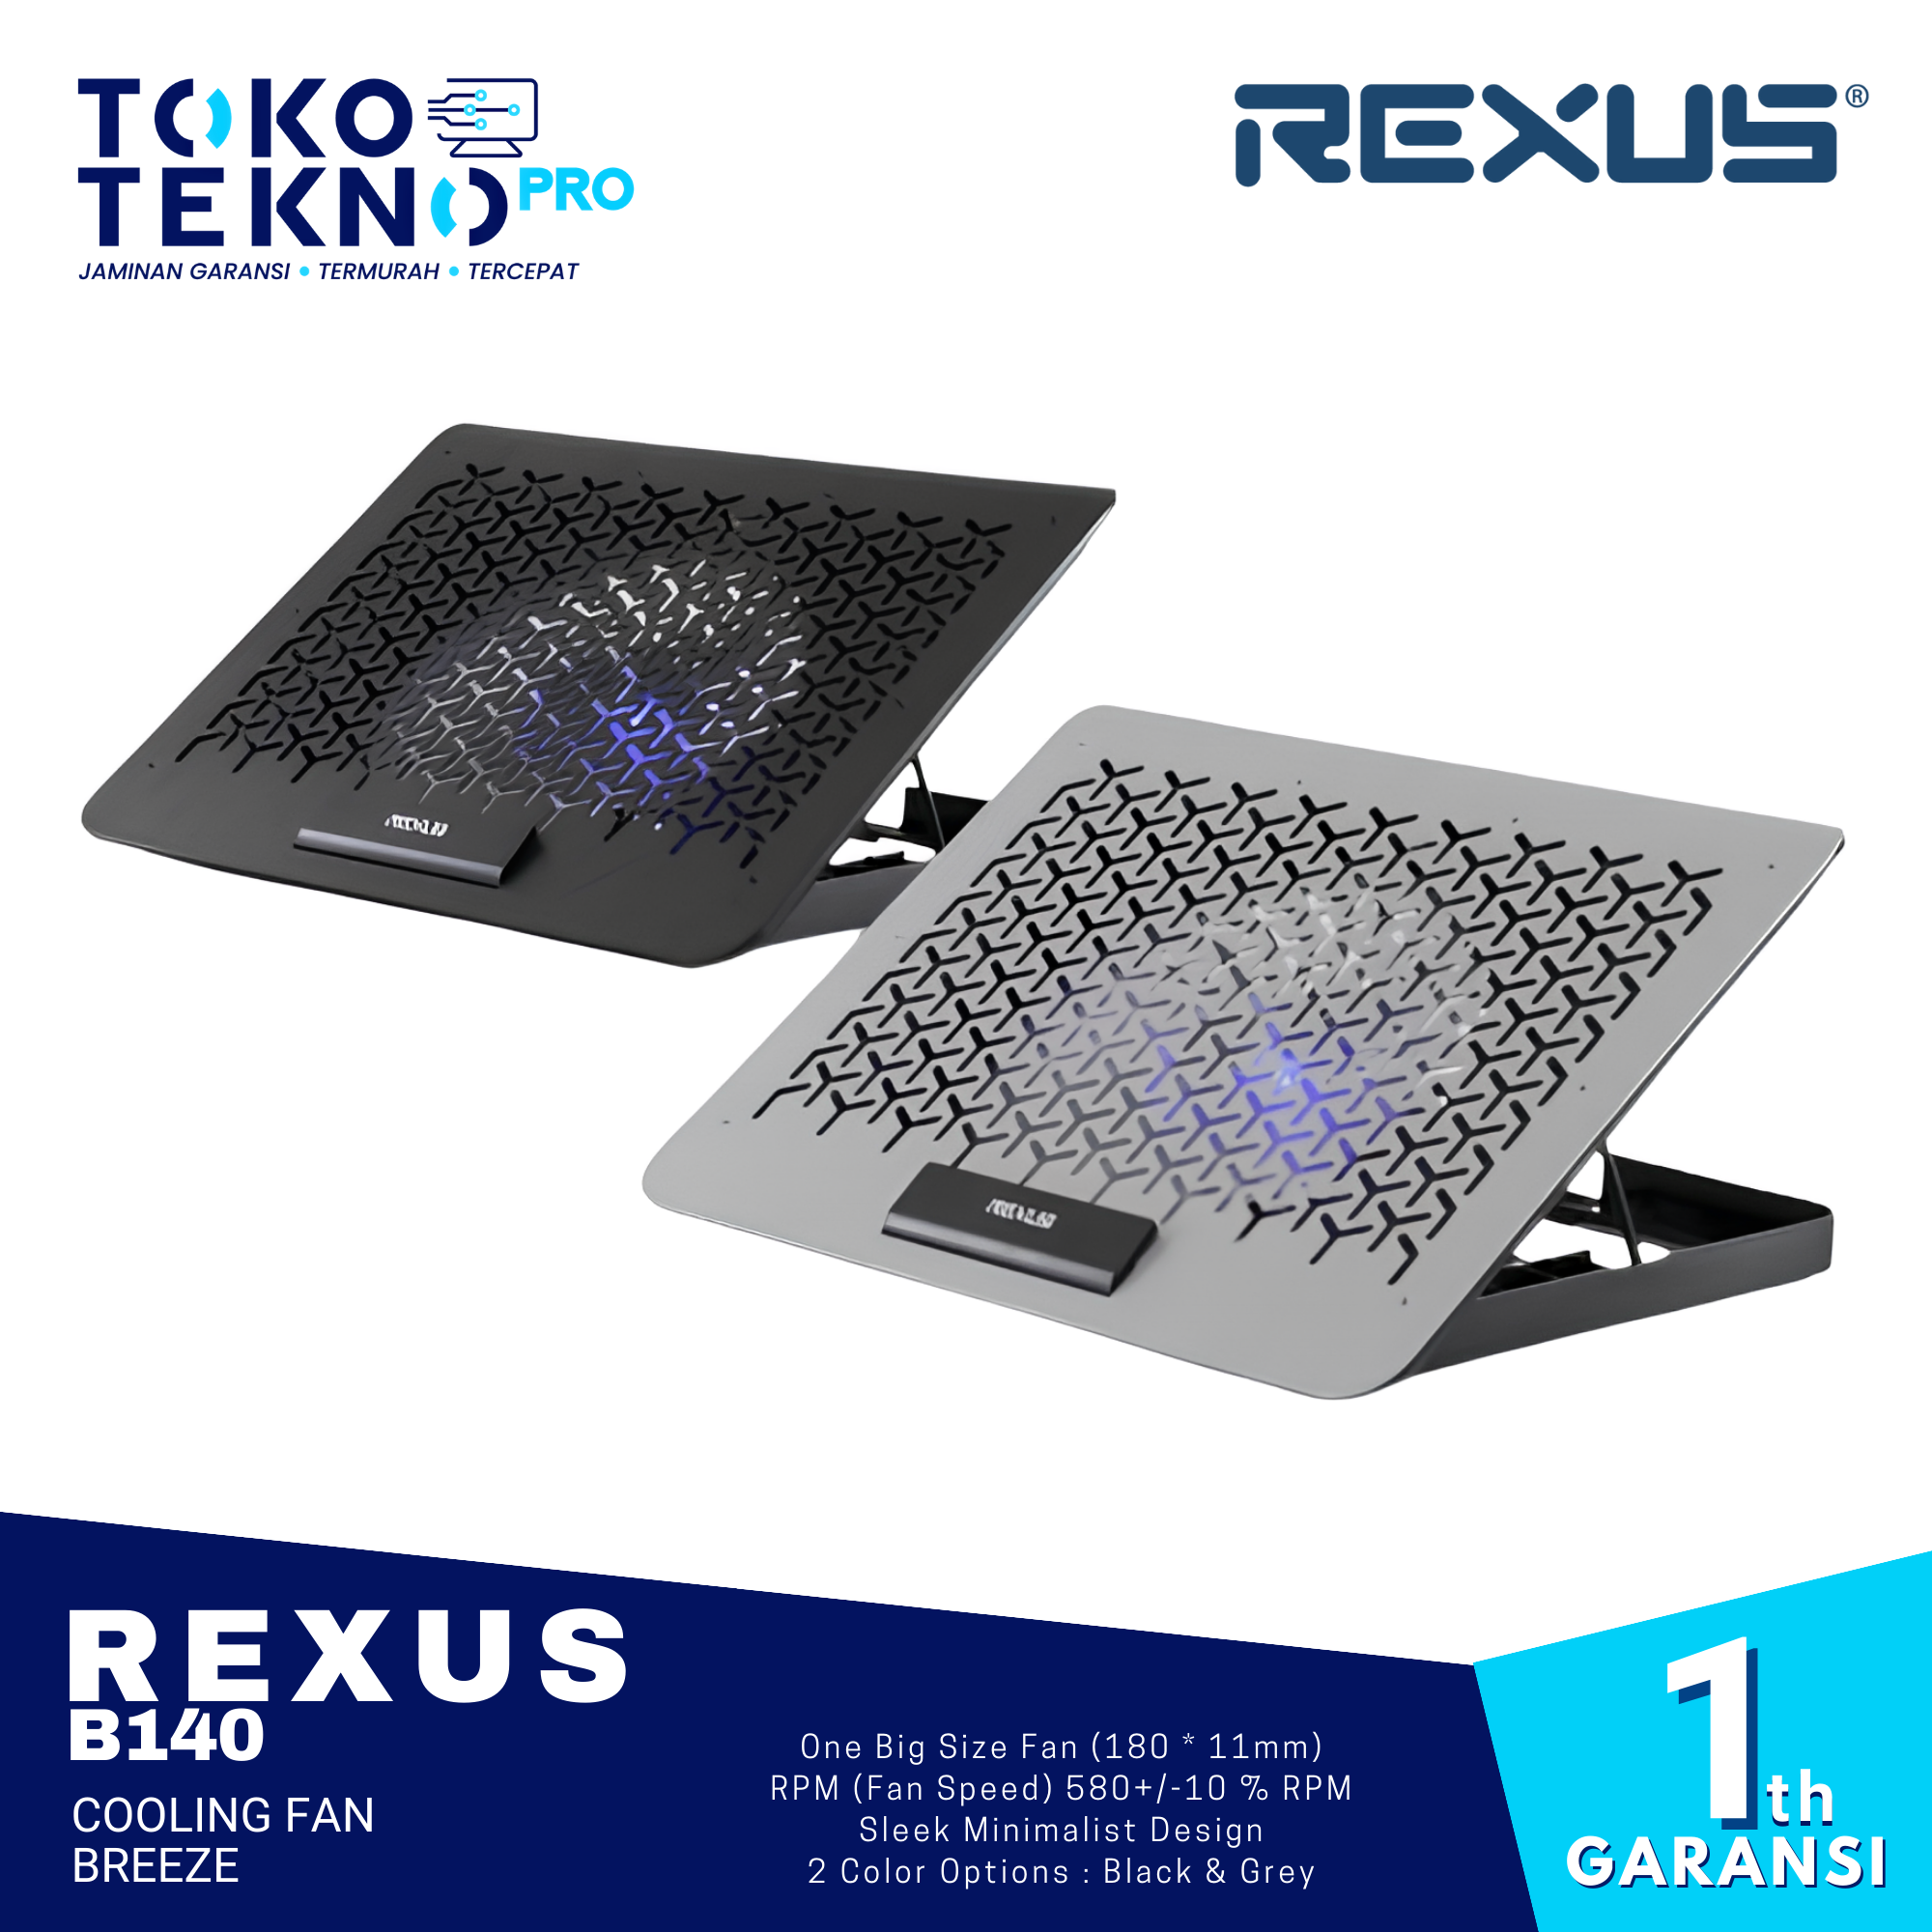 Rexus B140 Cooling Fan Breeze